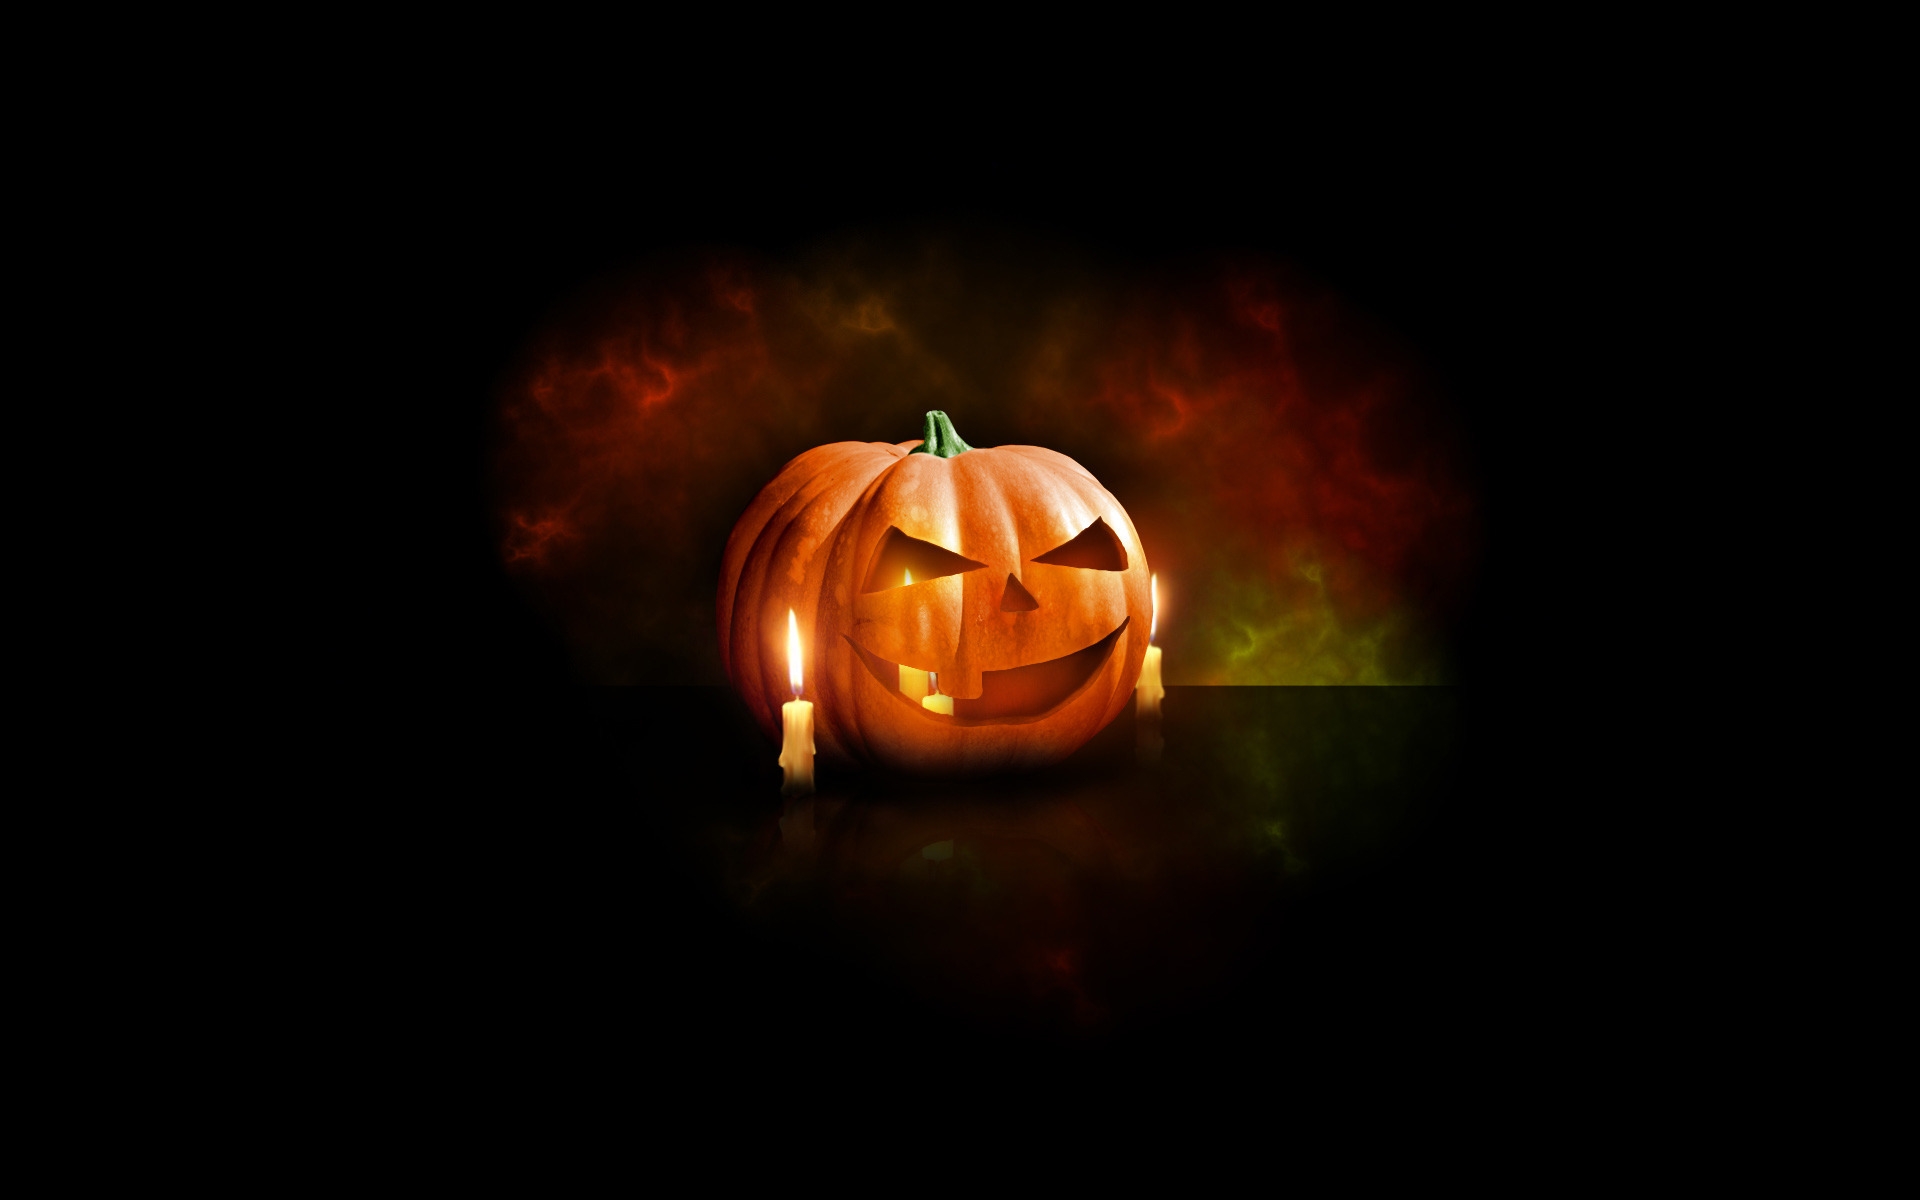 Halloween Pumpkin for 1920 x 1200 widescreen resolution